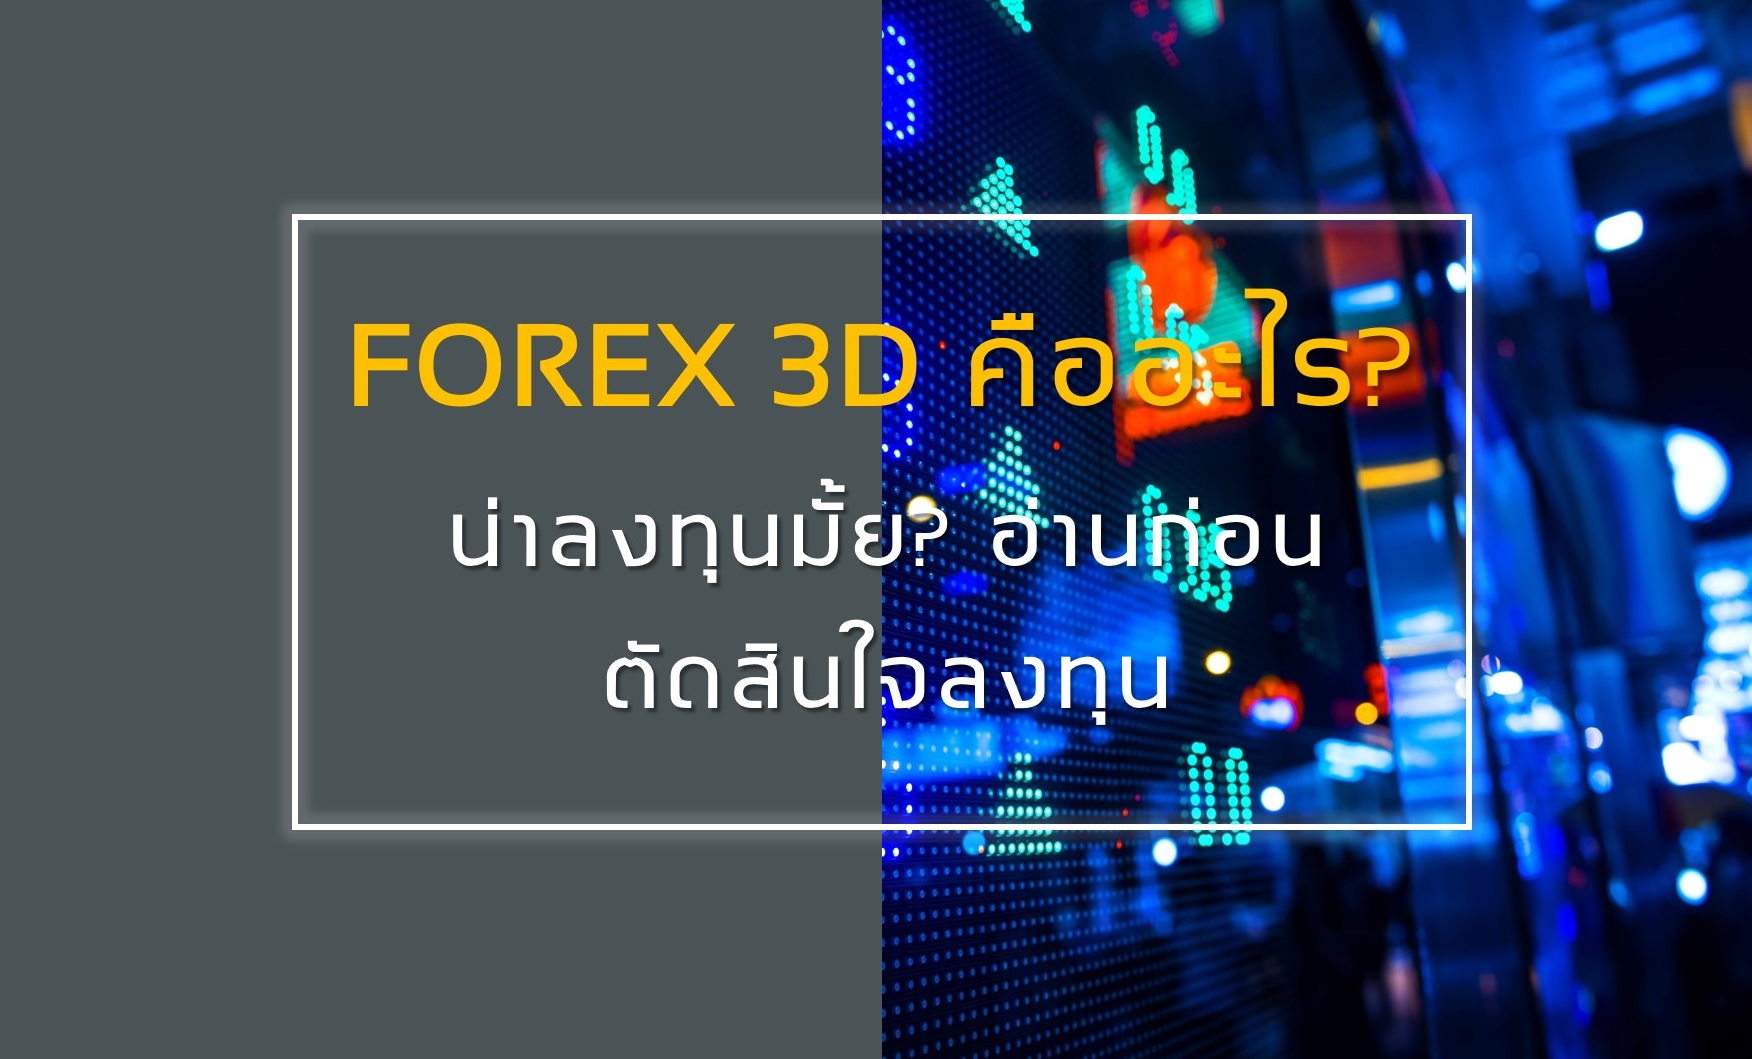 Forex 3d คือ อะไร